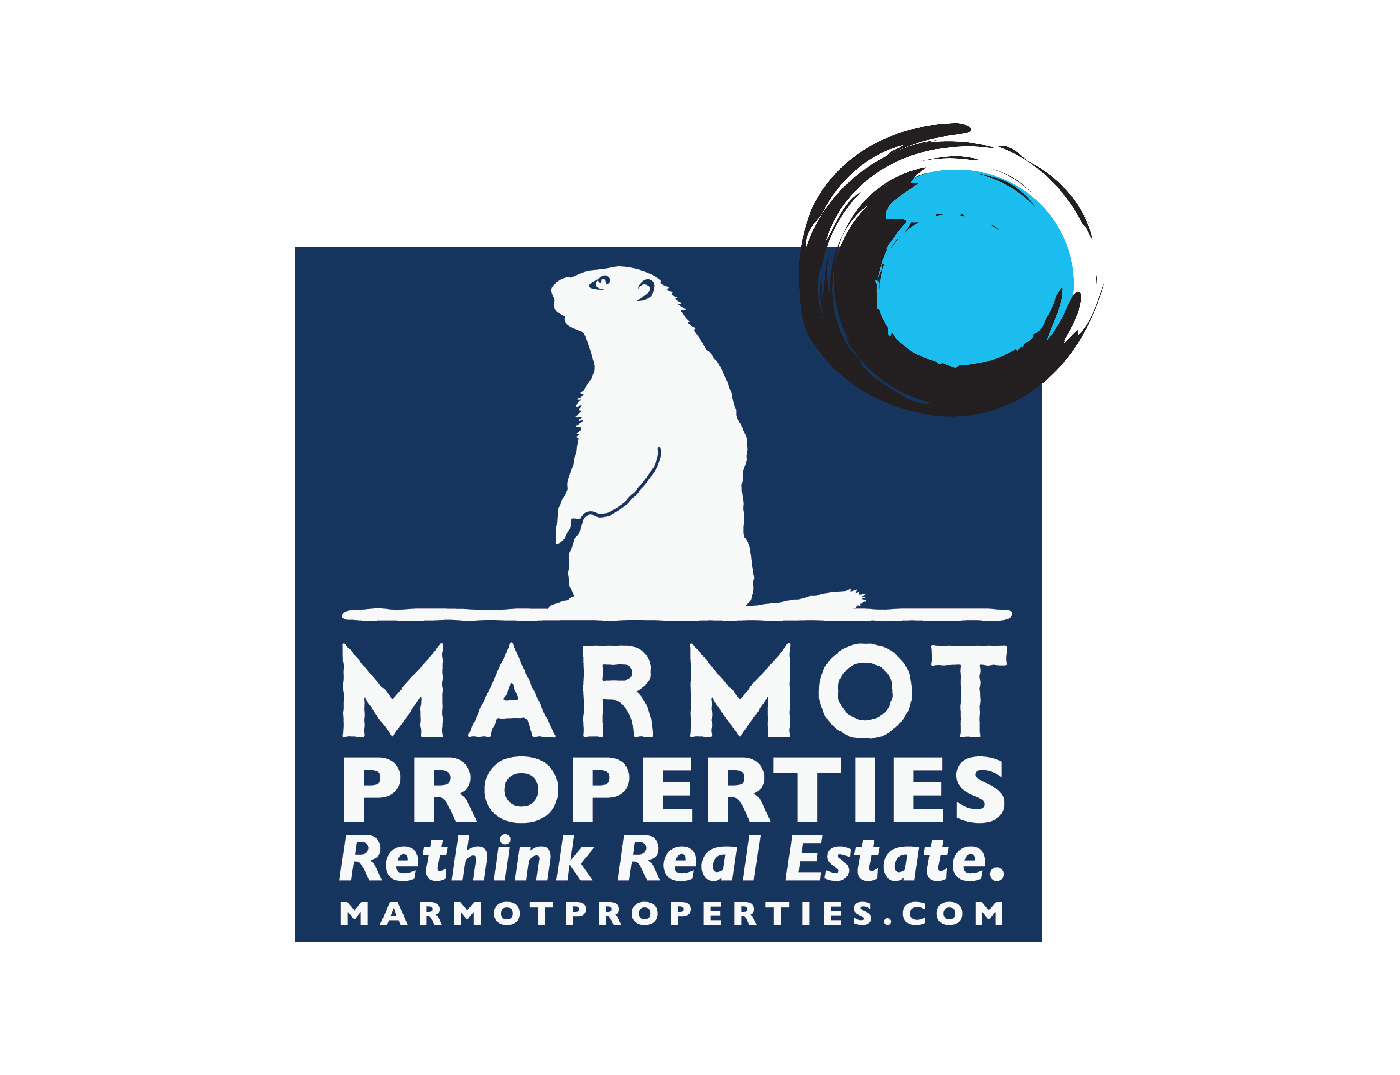 Marmot Properties Facebook